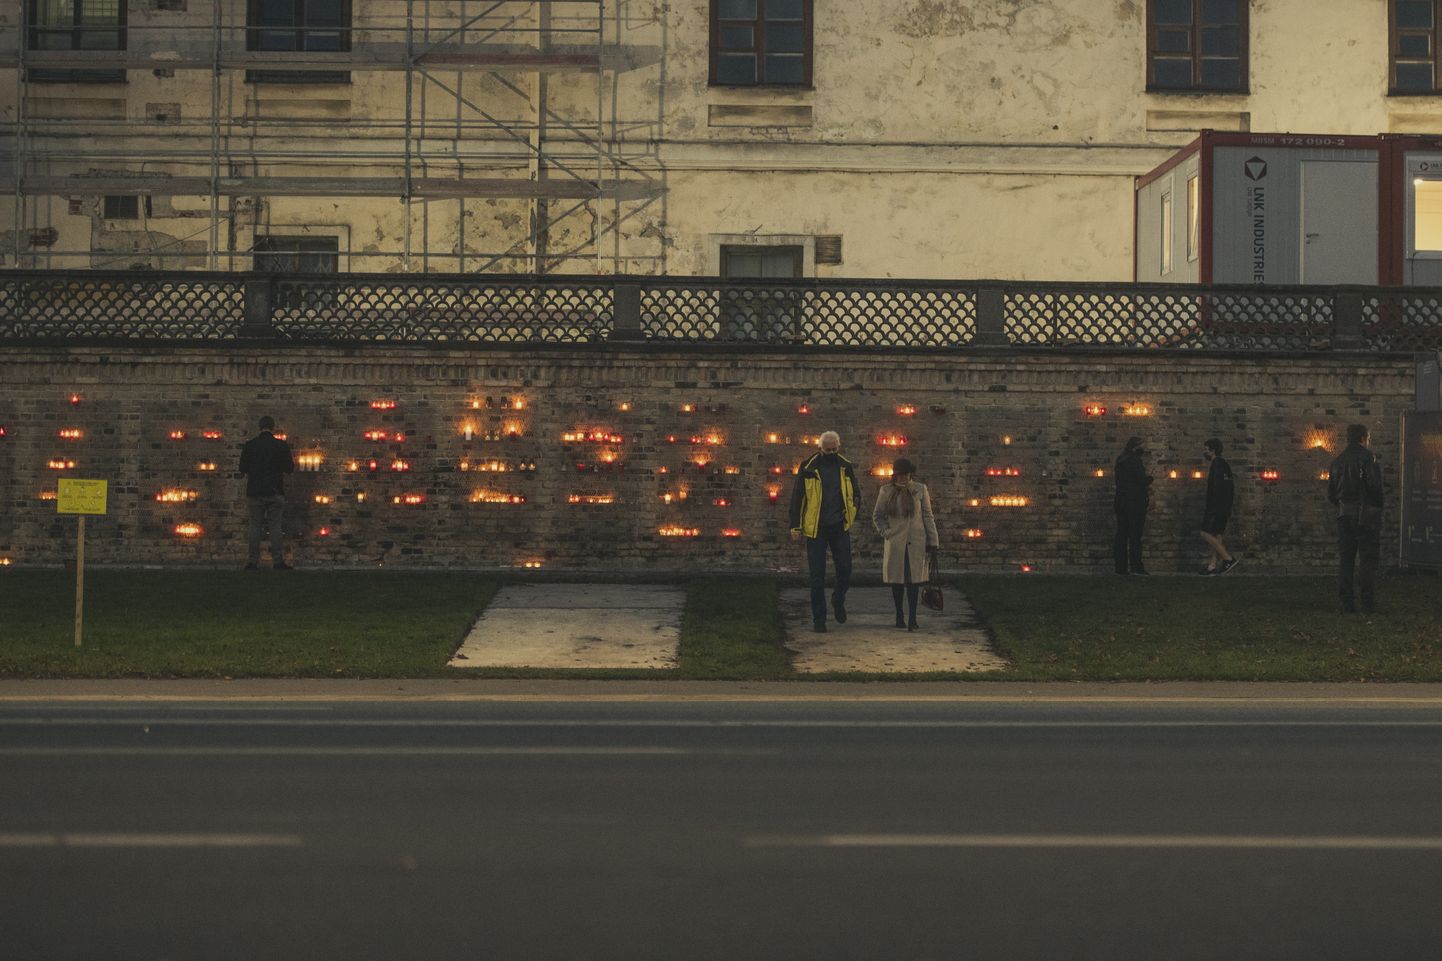 Foto: Iedzīvotāji noliek svecītes pie pils mūra